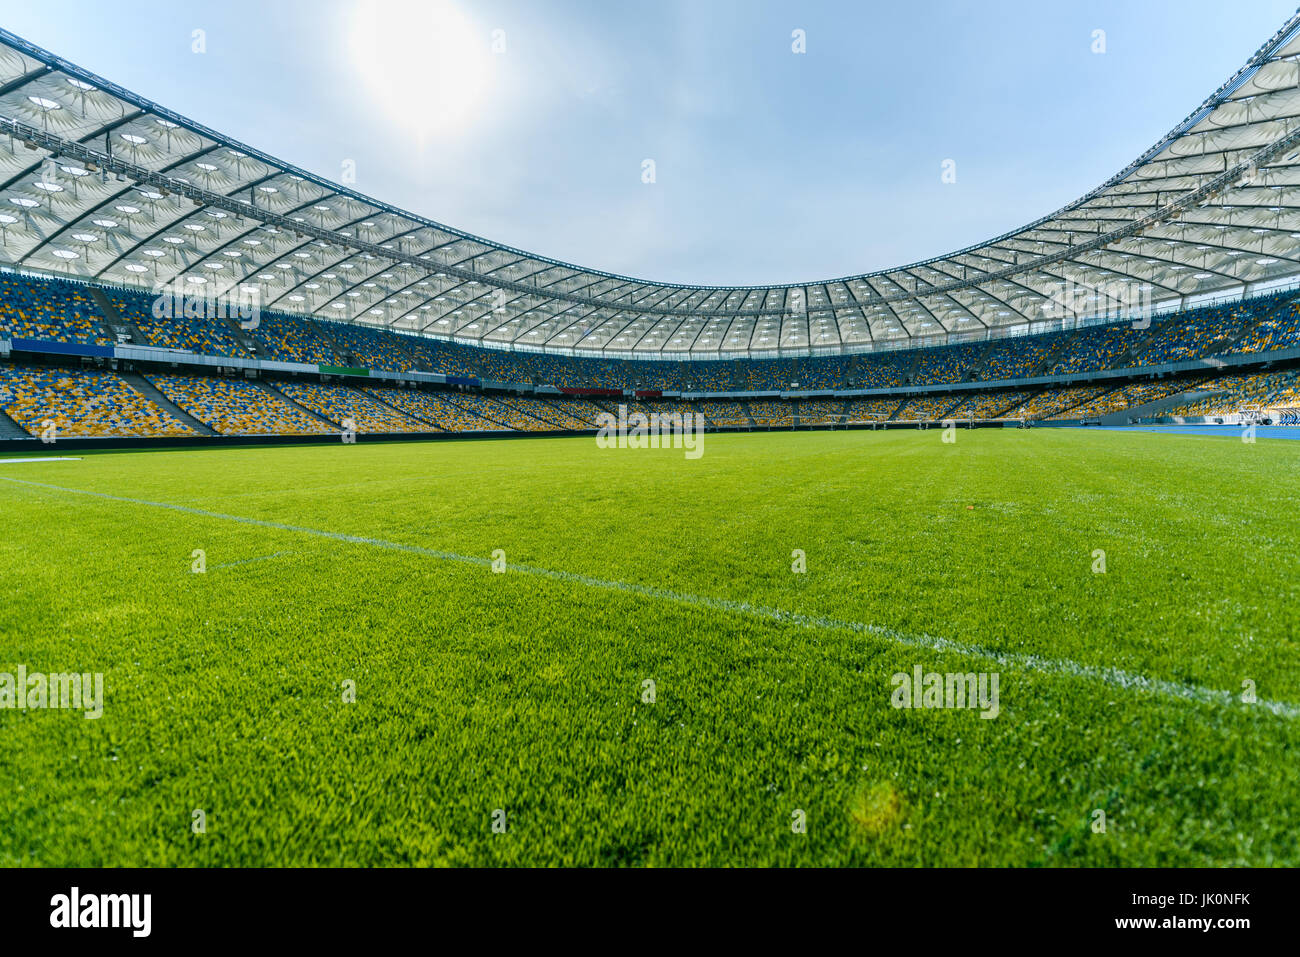 Panoramic view of soccer field stadium and stadium seats Stock Photo